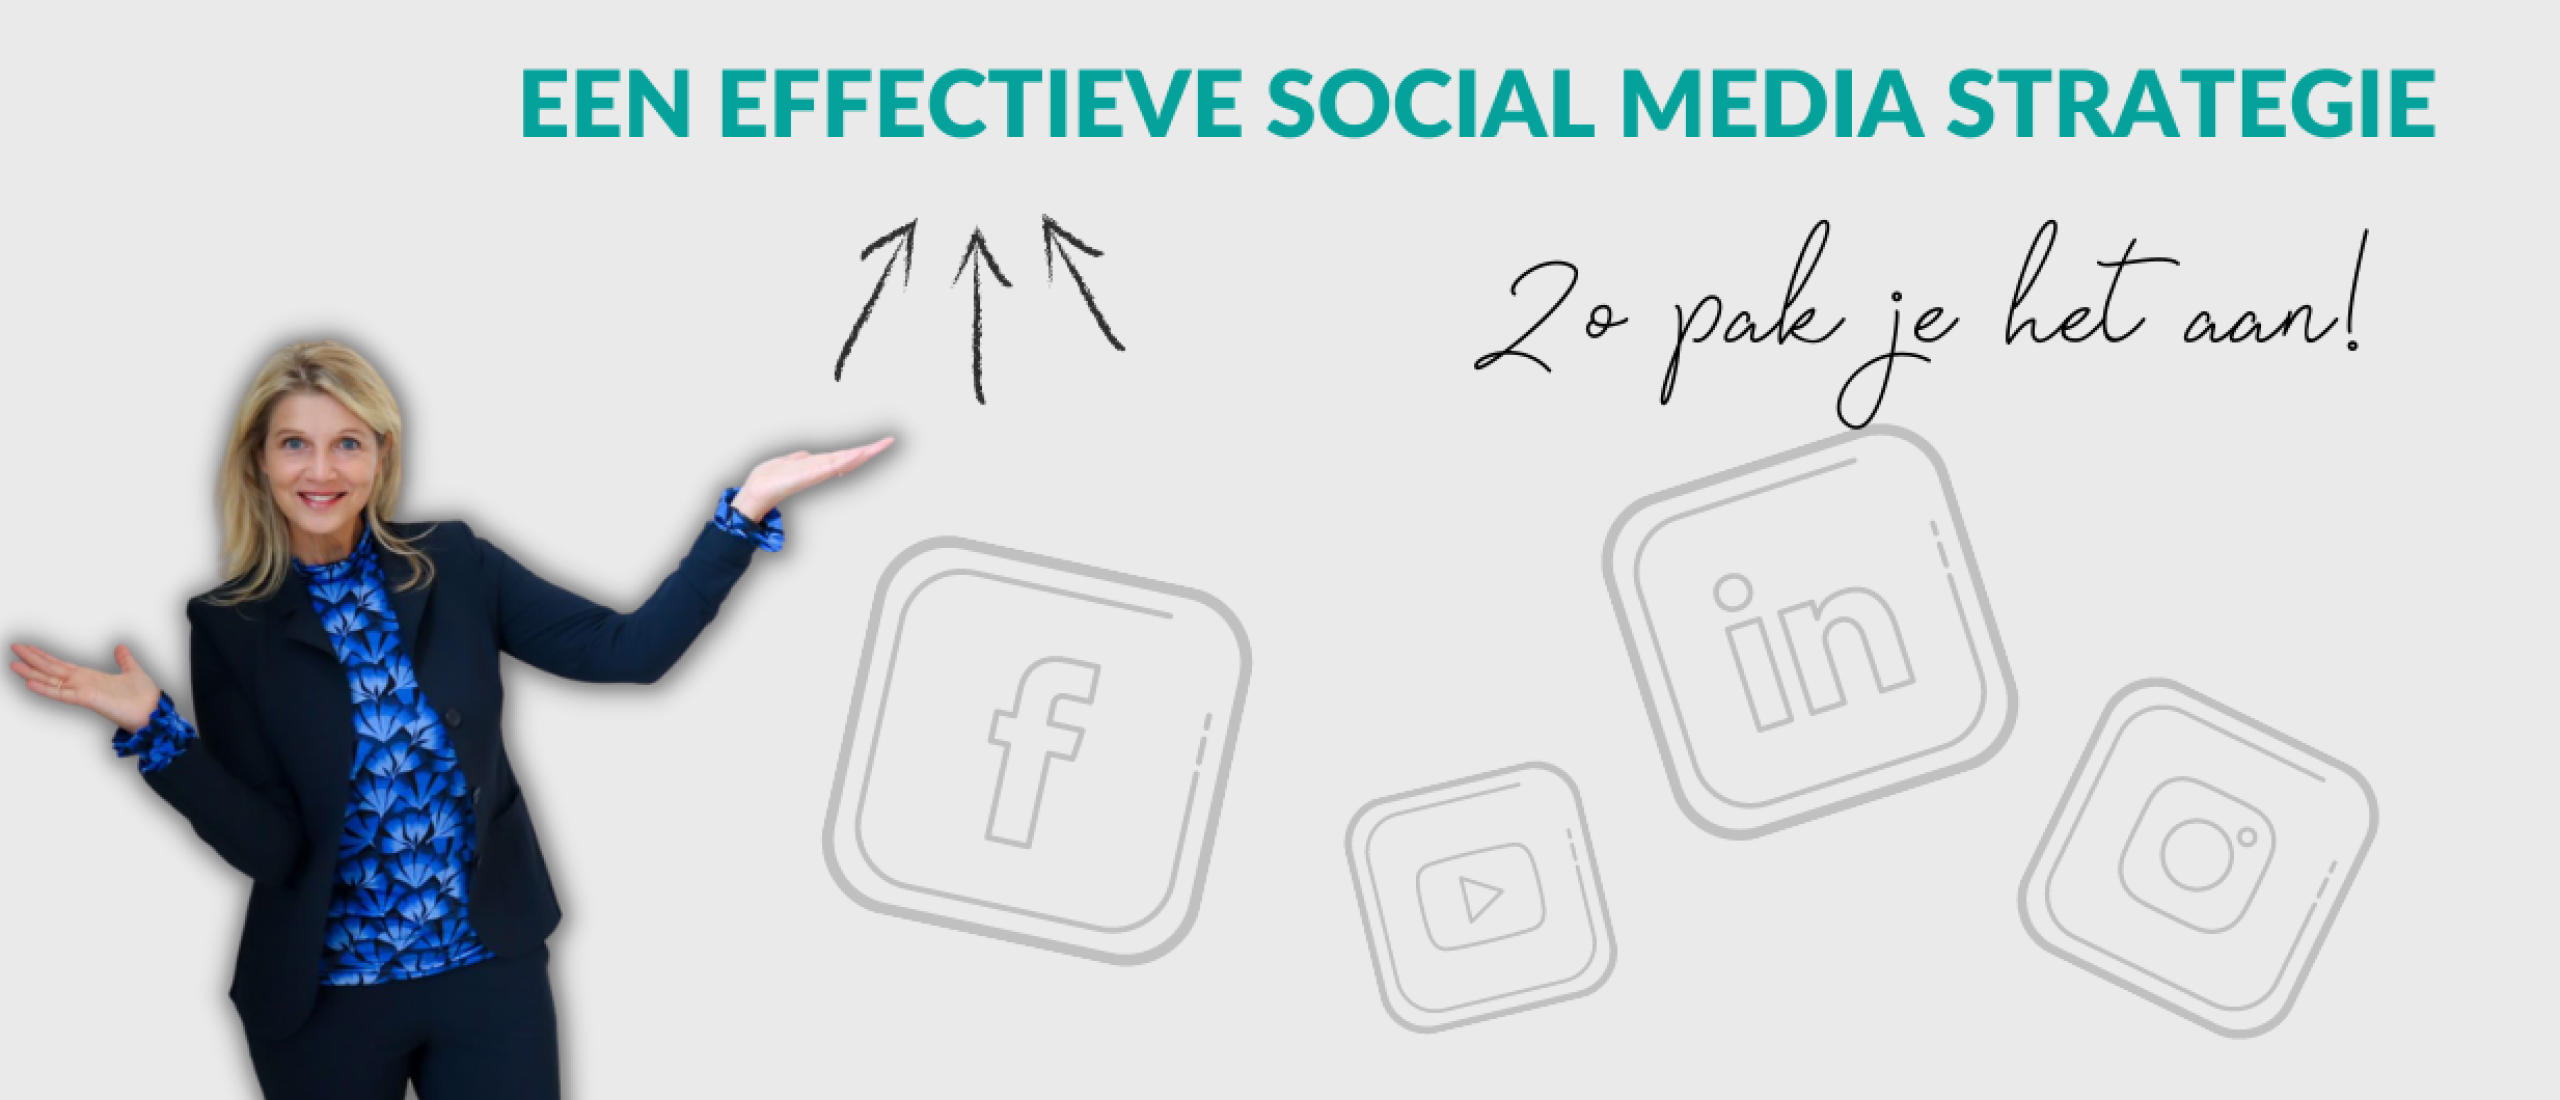 Een effectieve social media strategie: zo pak je het aan!